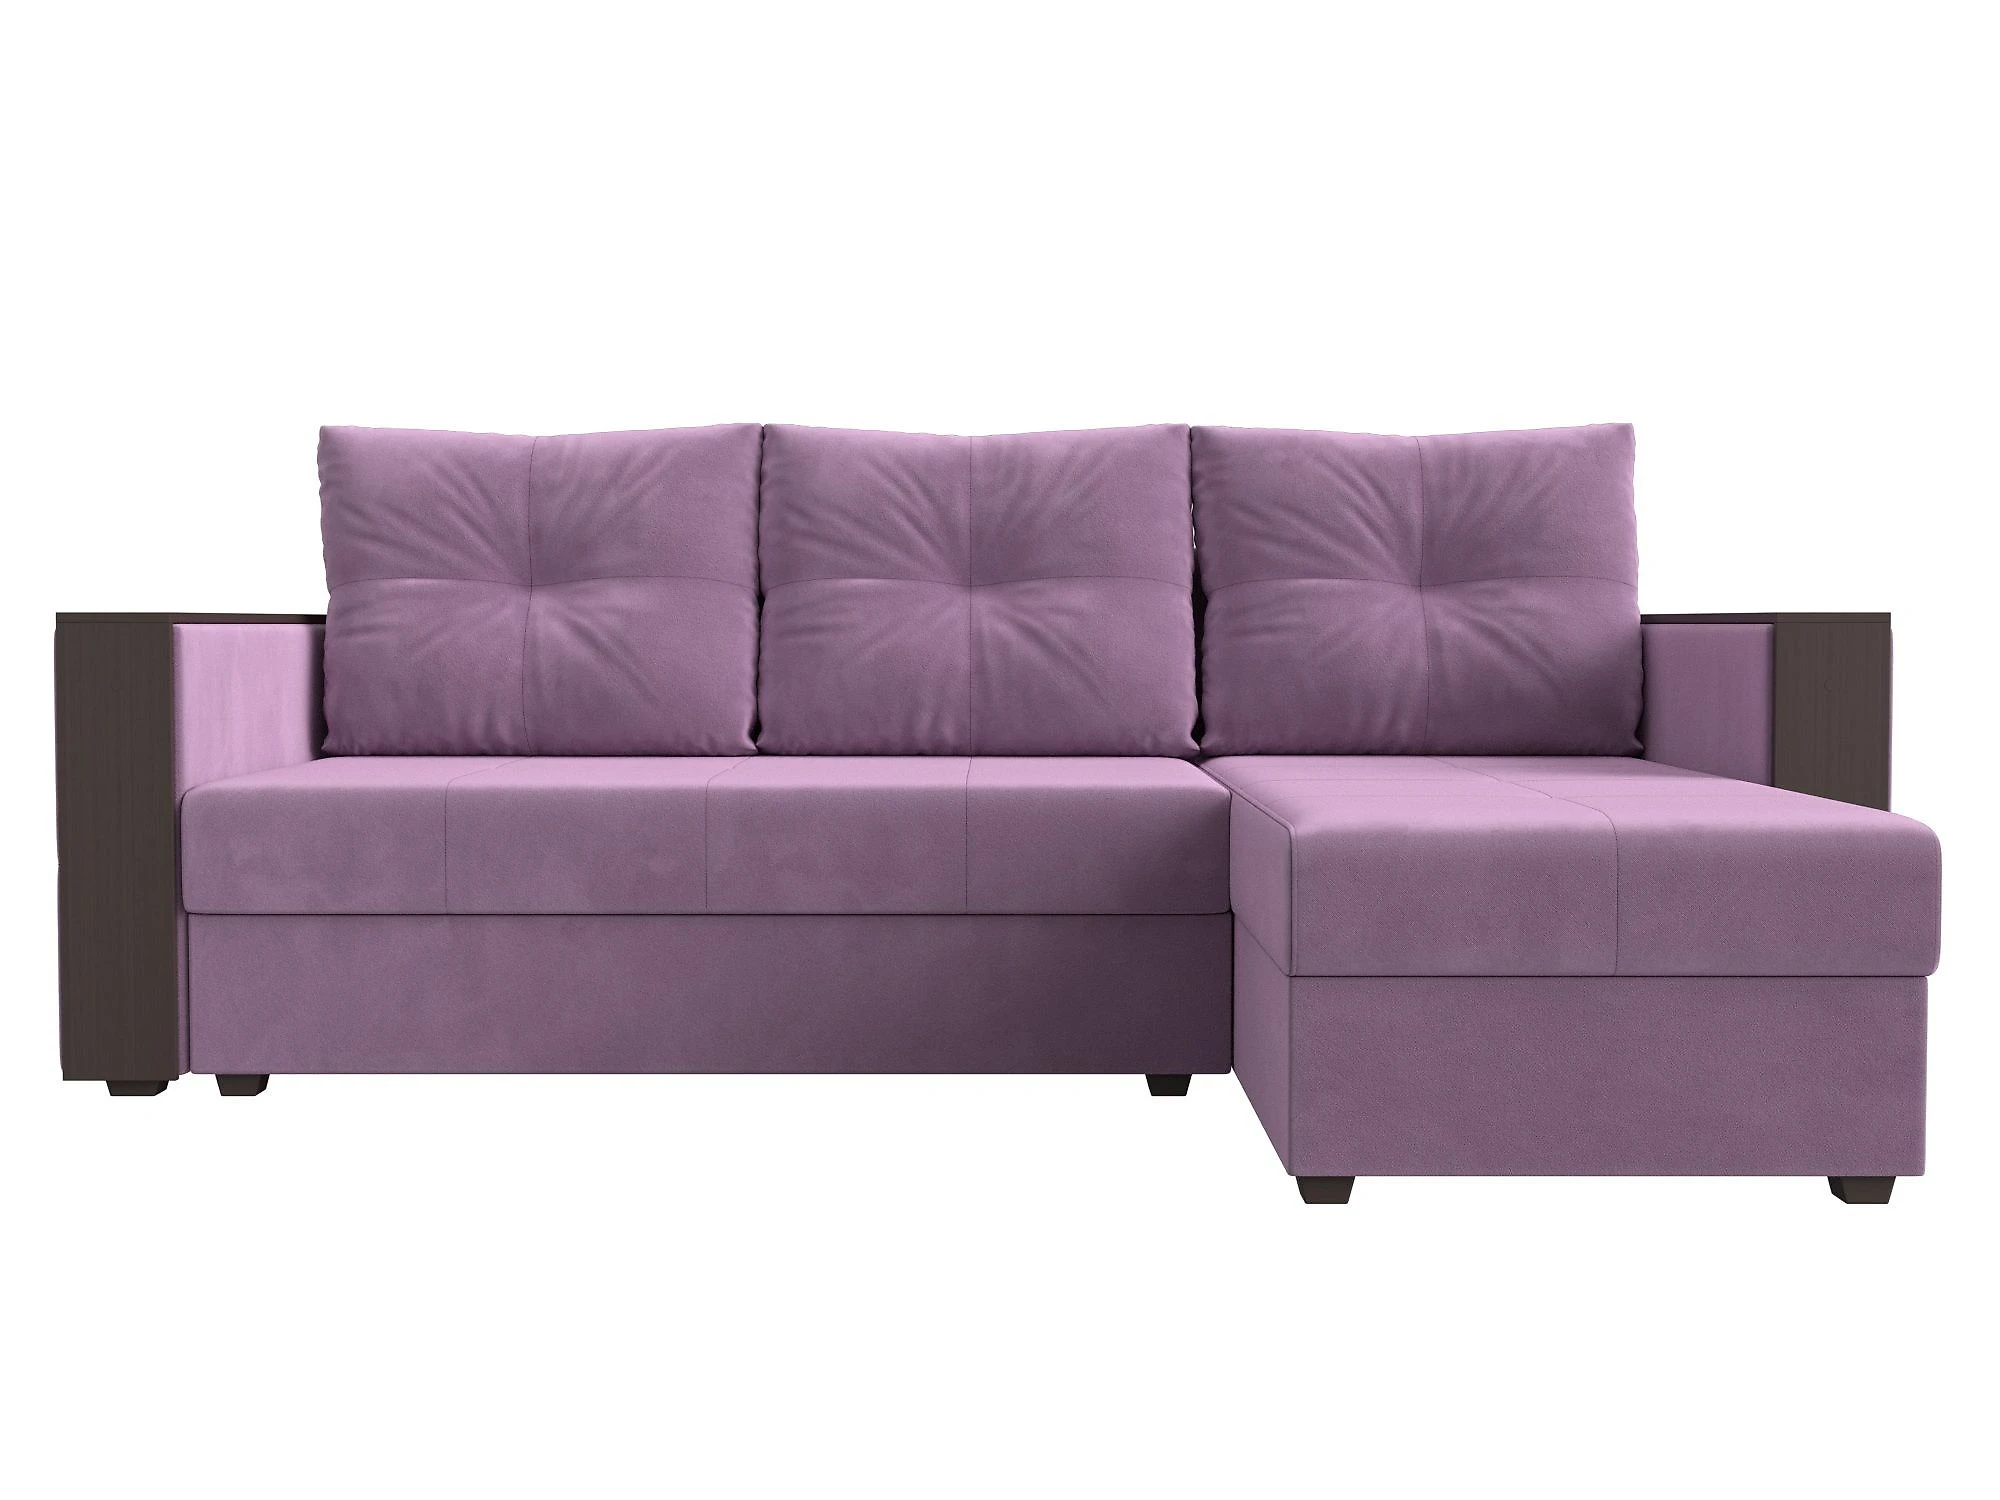 Односпальный угловой диван Валенсия Лайт Дизайн 7